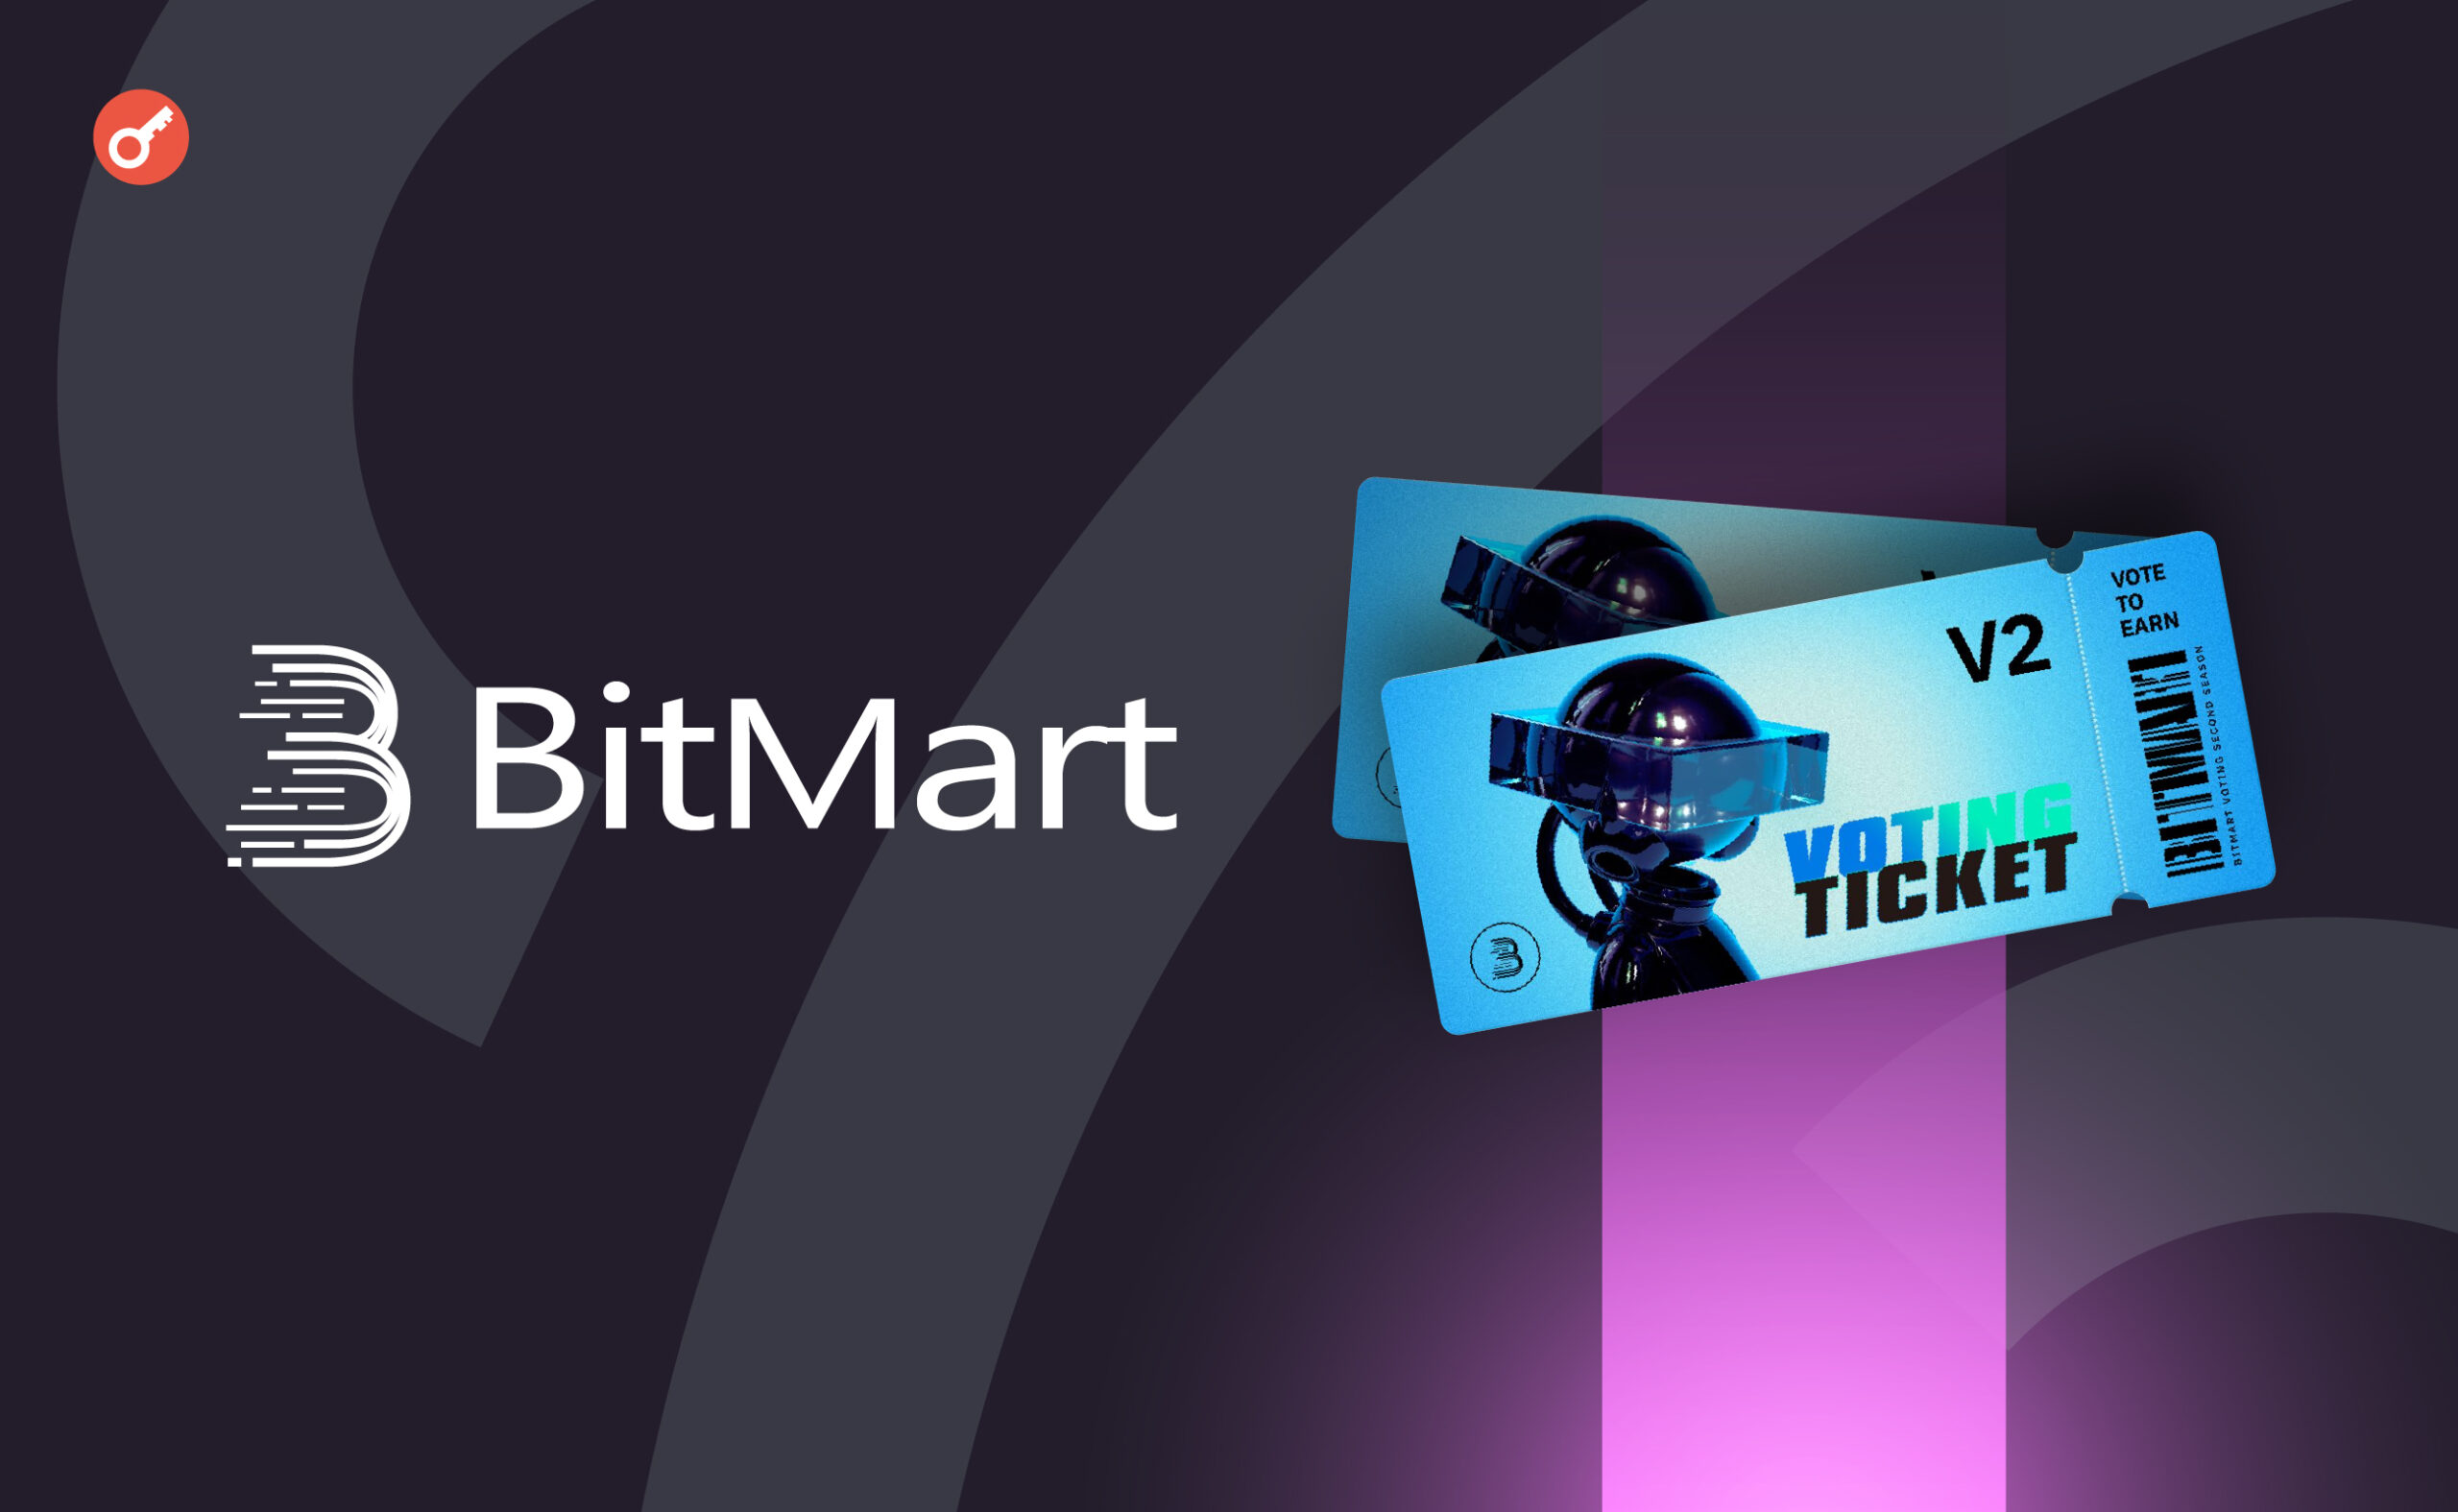 Биржа BitMart объявила о запуске второго раунда проекта Vote to Earn . Заглавный коллаж новости.